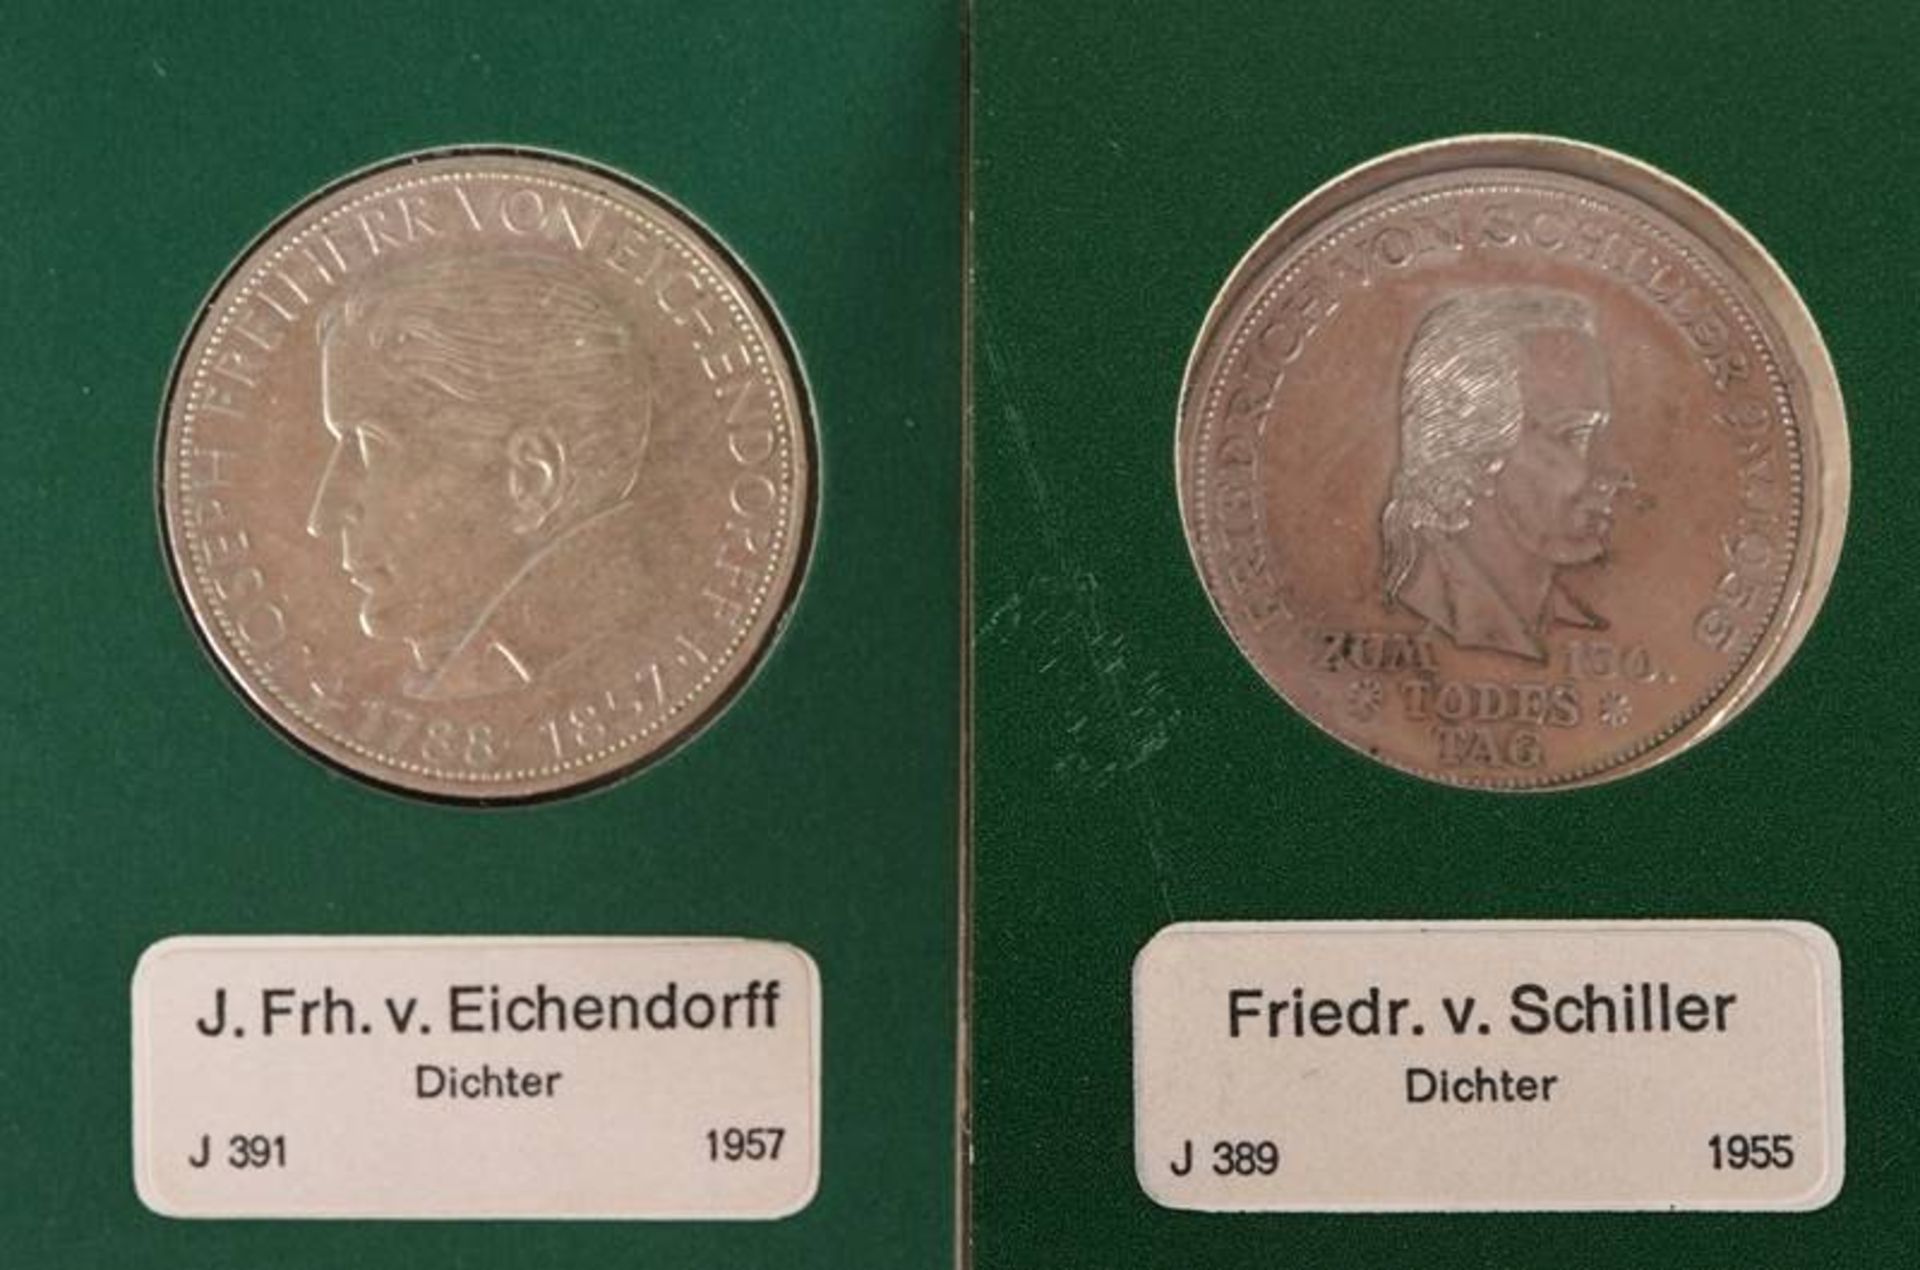 5 DM commemorative coins